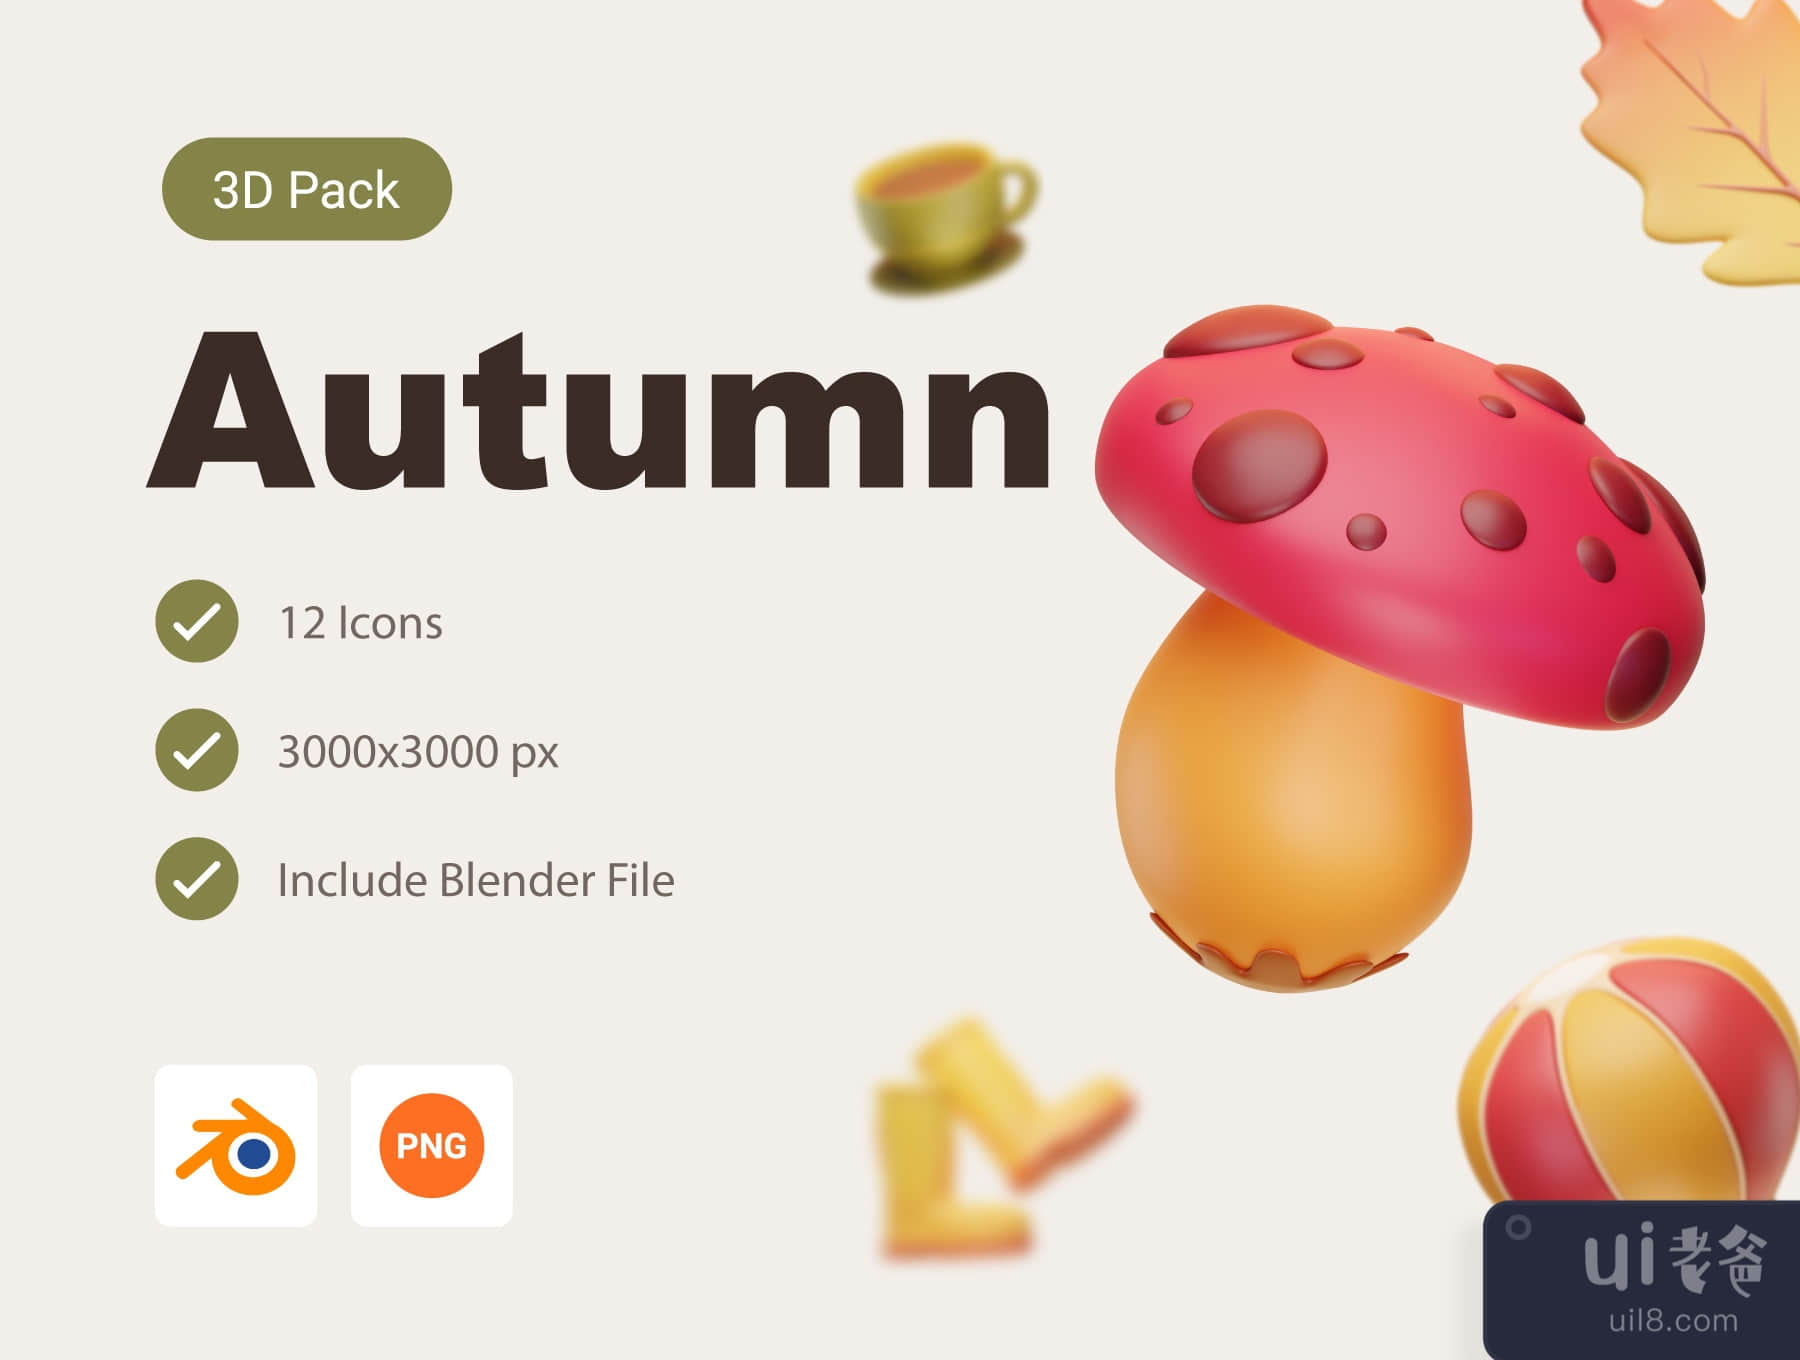 秋季3D图标包 (Autumn 3D Icon Pack)插图